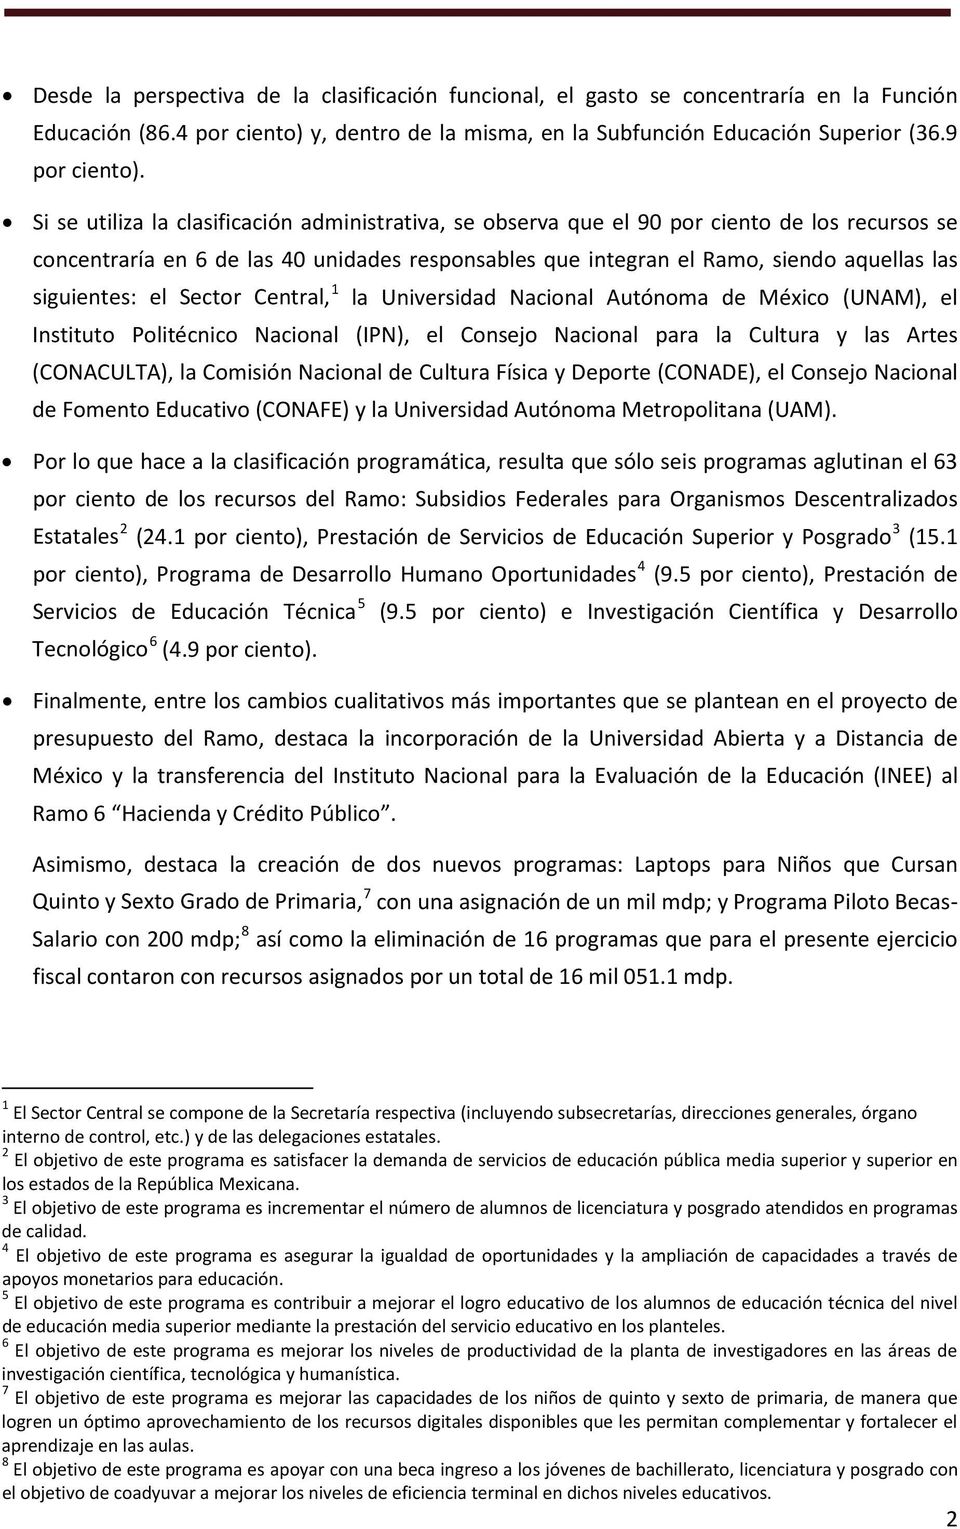 siguientes: el Sector Central, 1 la Universidad Nacional Autónoma de México (UNAM), el Instituto Politécnico Nacional (IPN), el Consejo Nacional para la Cultura y las Artes (CONACULTA), la Comisión